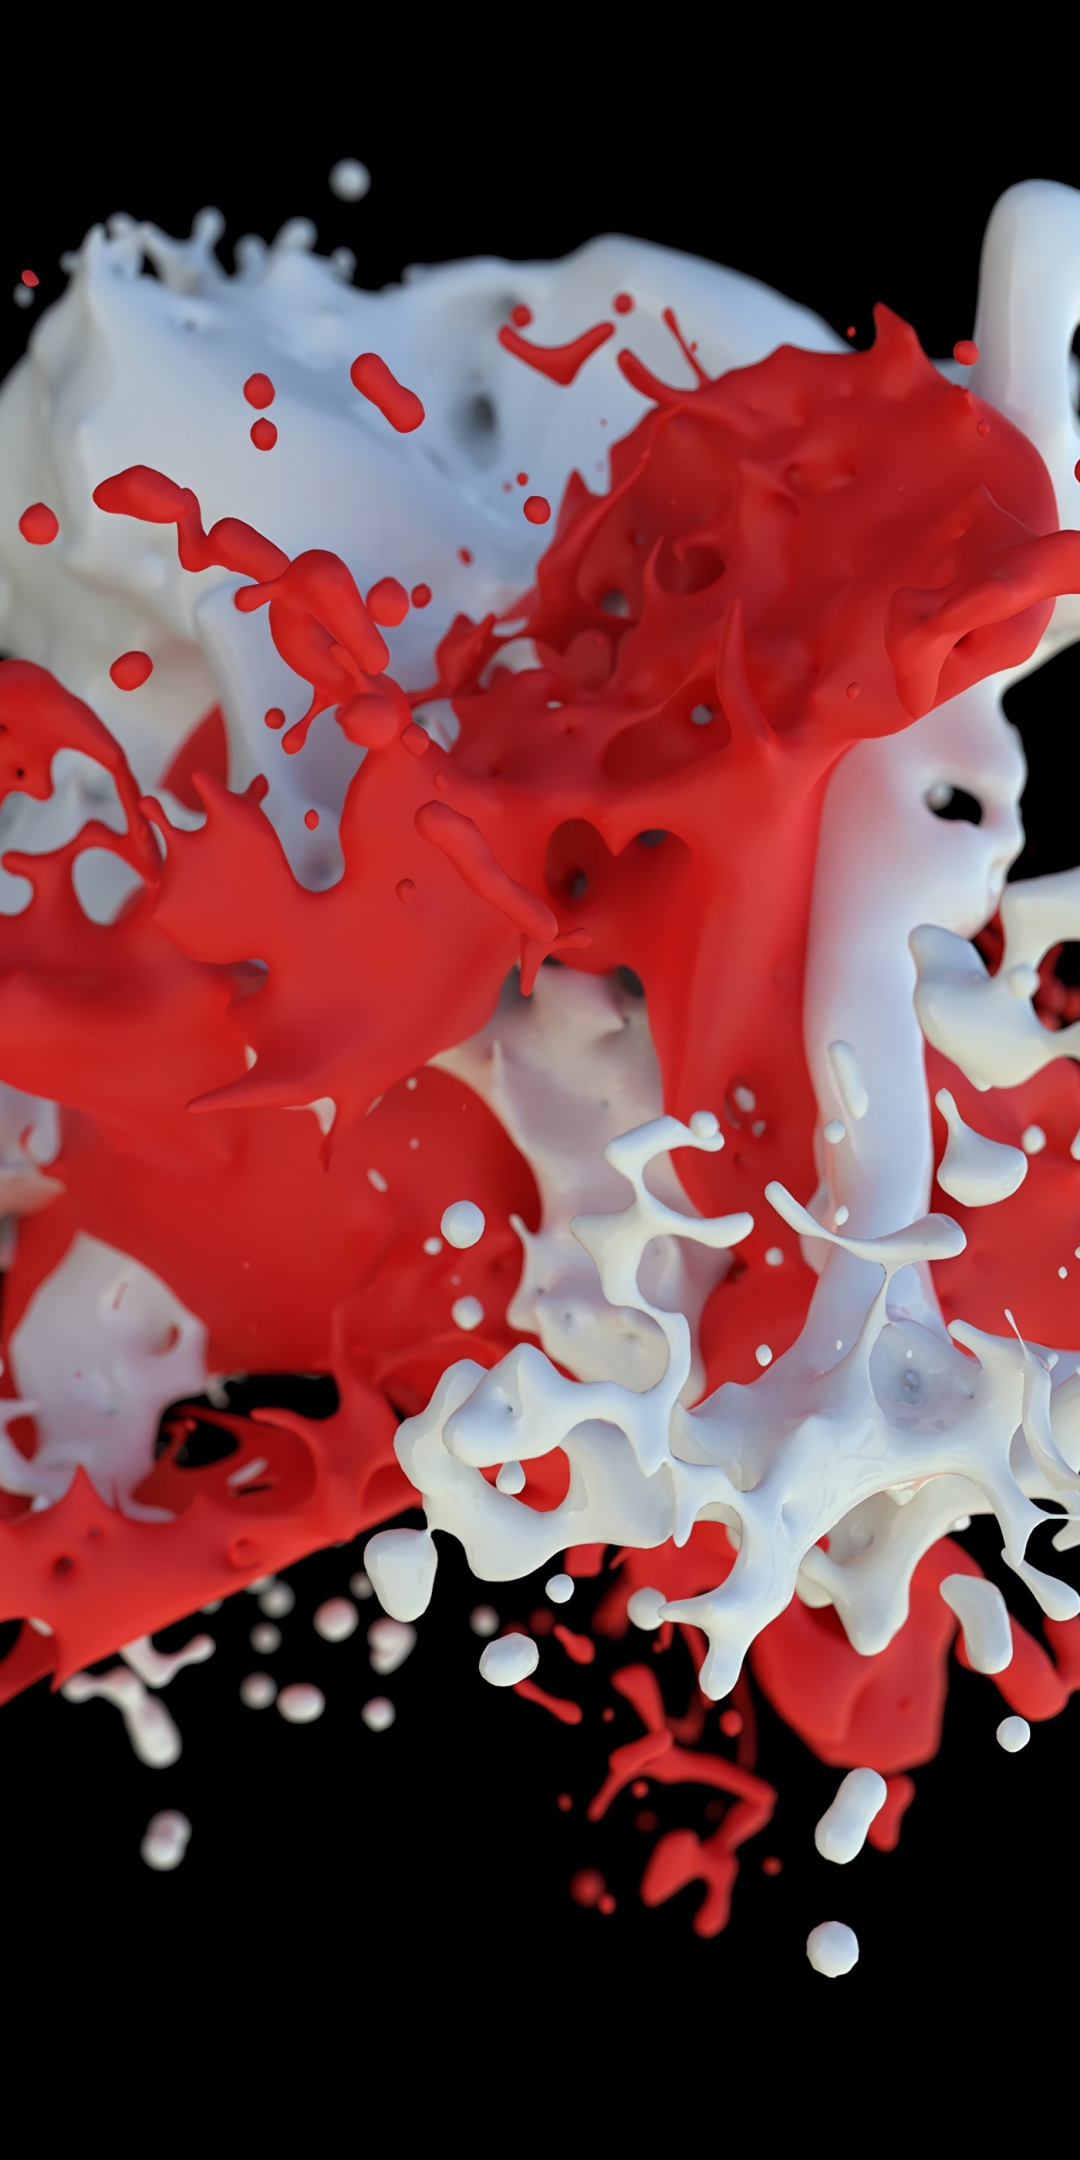 Paint, white-red clot, splash, 1080x2160 wallpaper